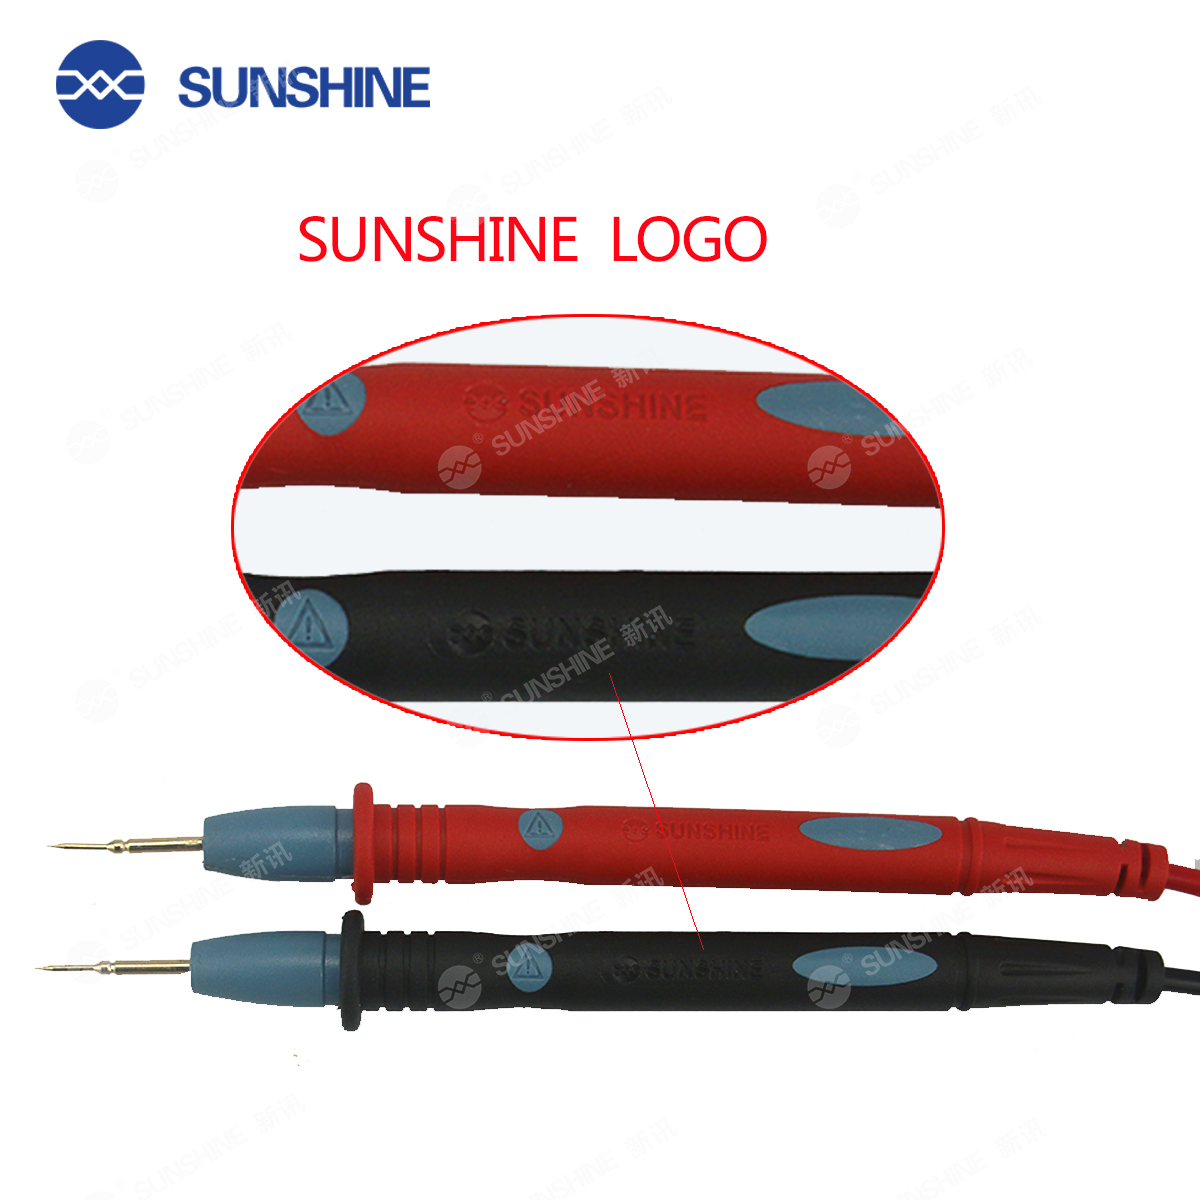 SUNSHINE SS-024 Multimeter Pen sunshine SS-024 Multimeter Pen